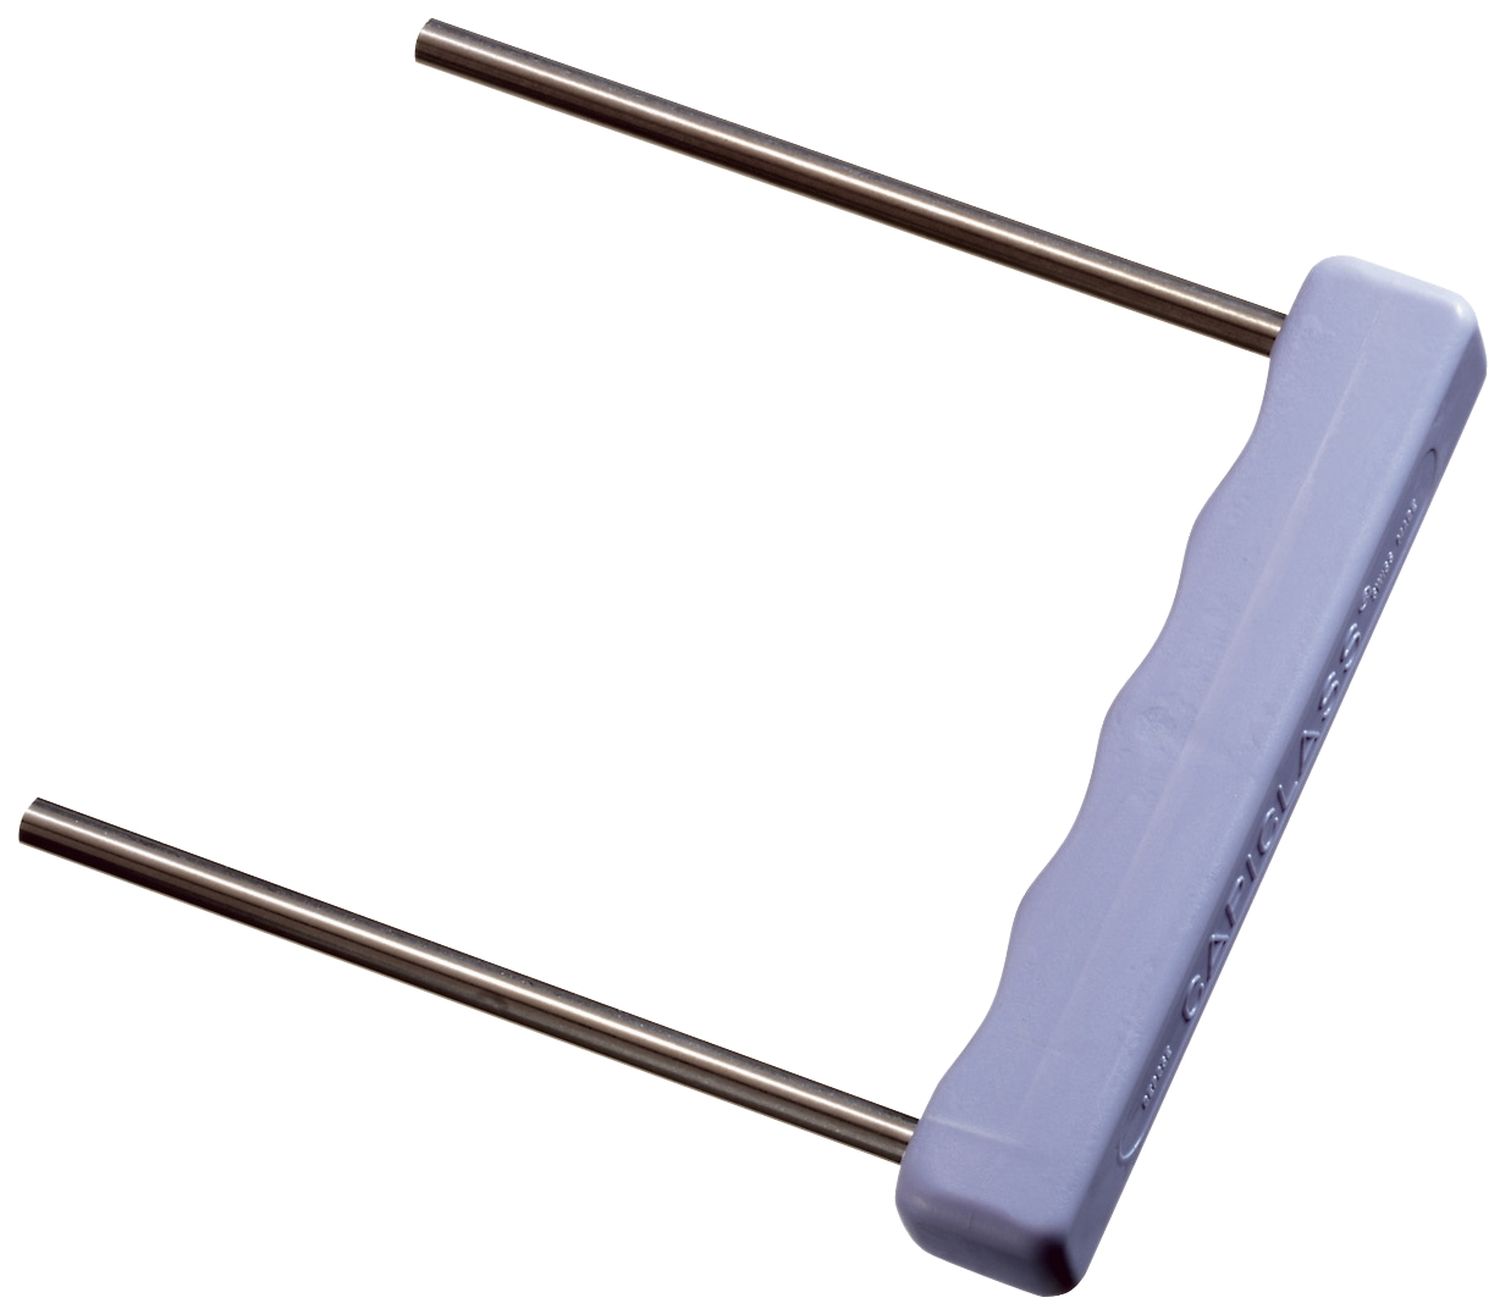 Umfüller für Abheftbügel Leitz 6079, Metall mit Kunststoffgriff, violett